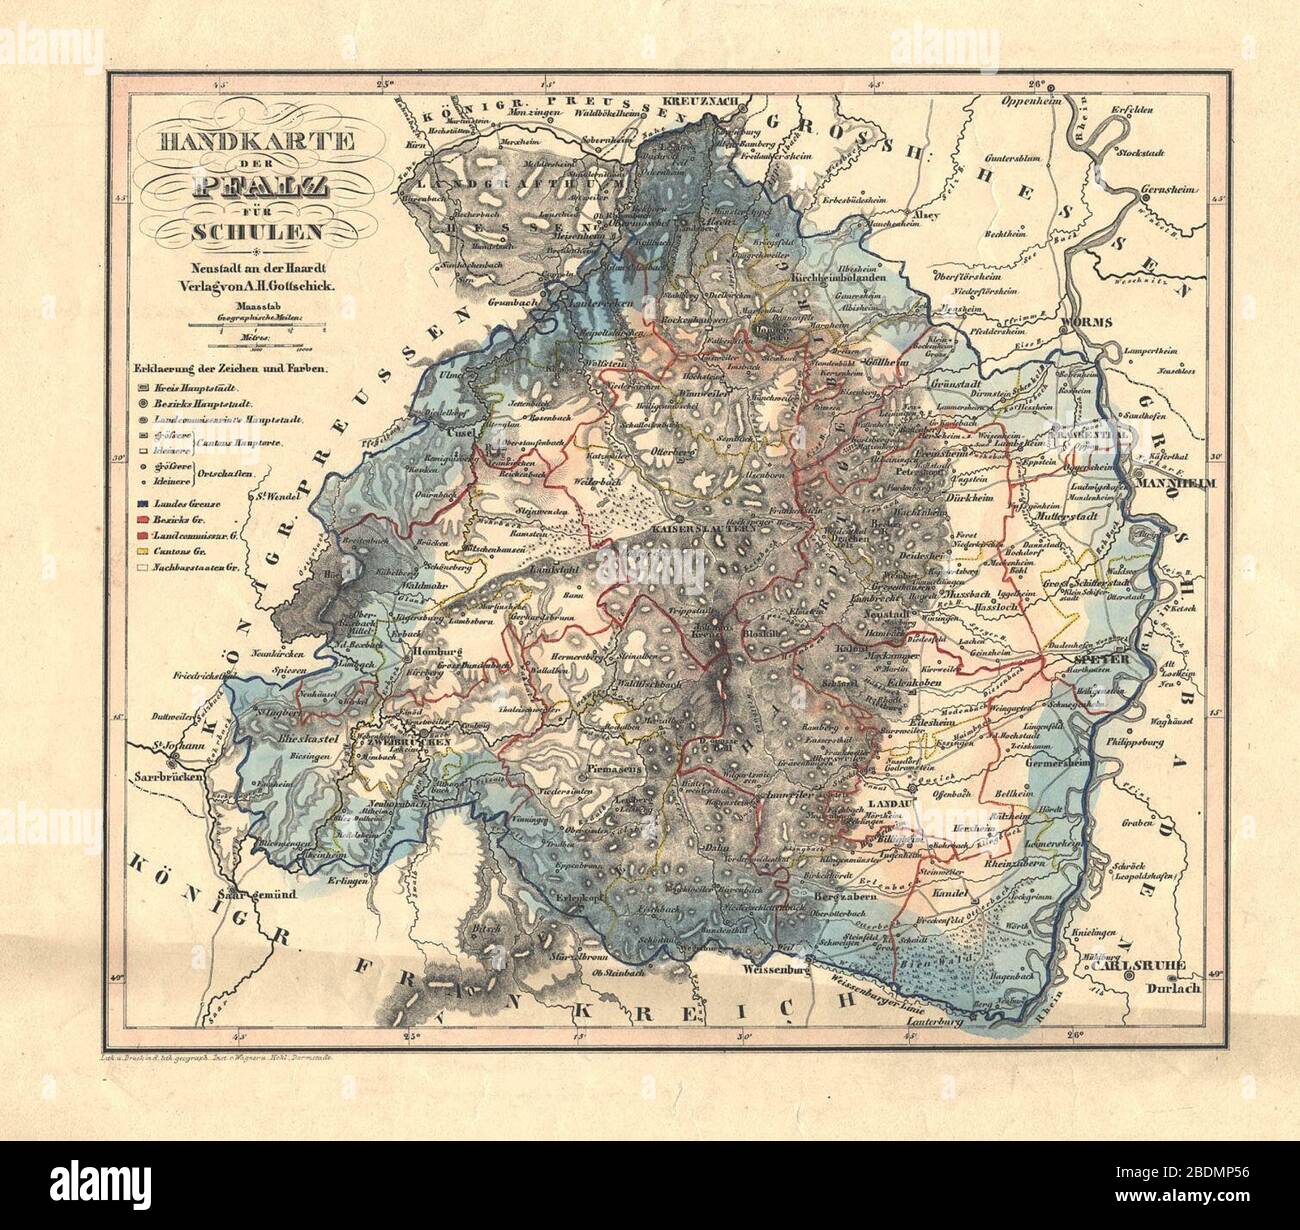 Handkarte der Pfalz für Schulen 1844. Stock Photo